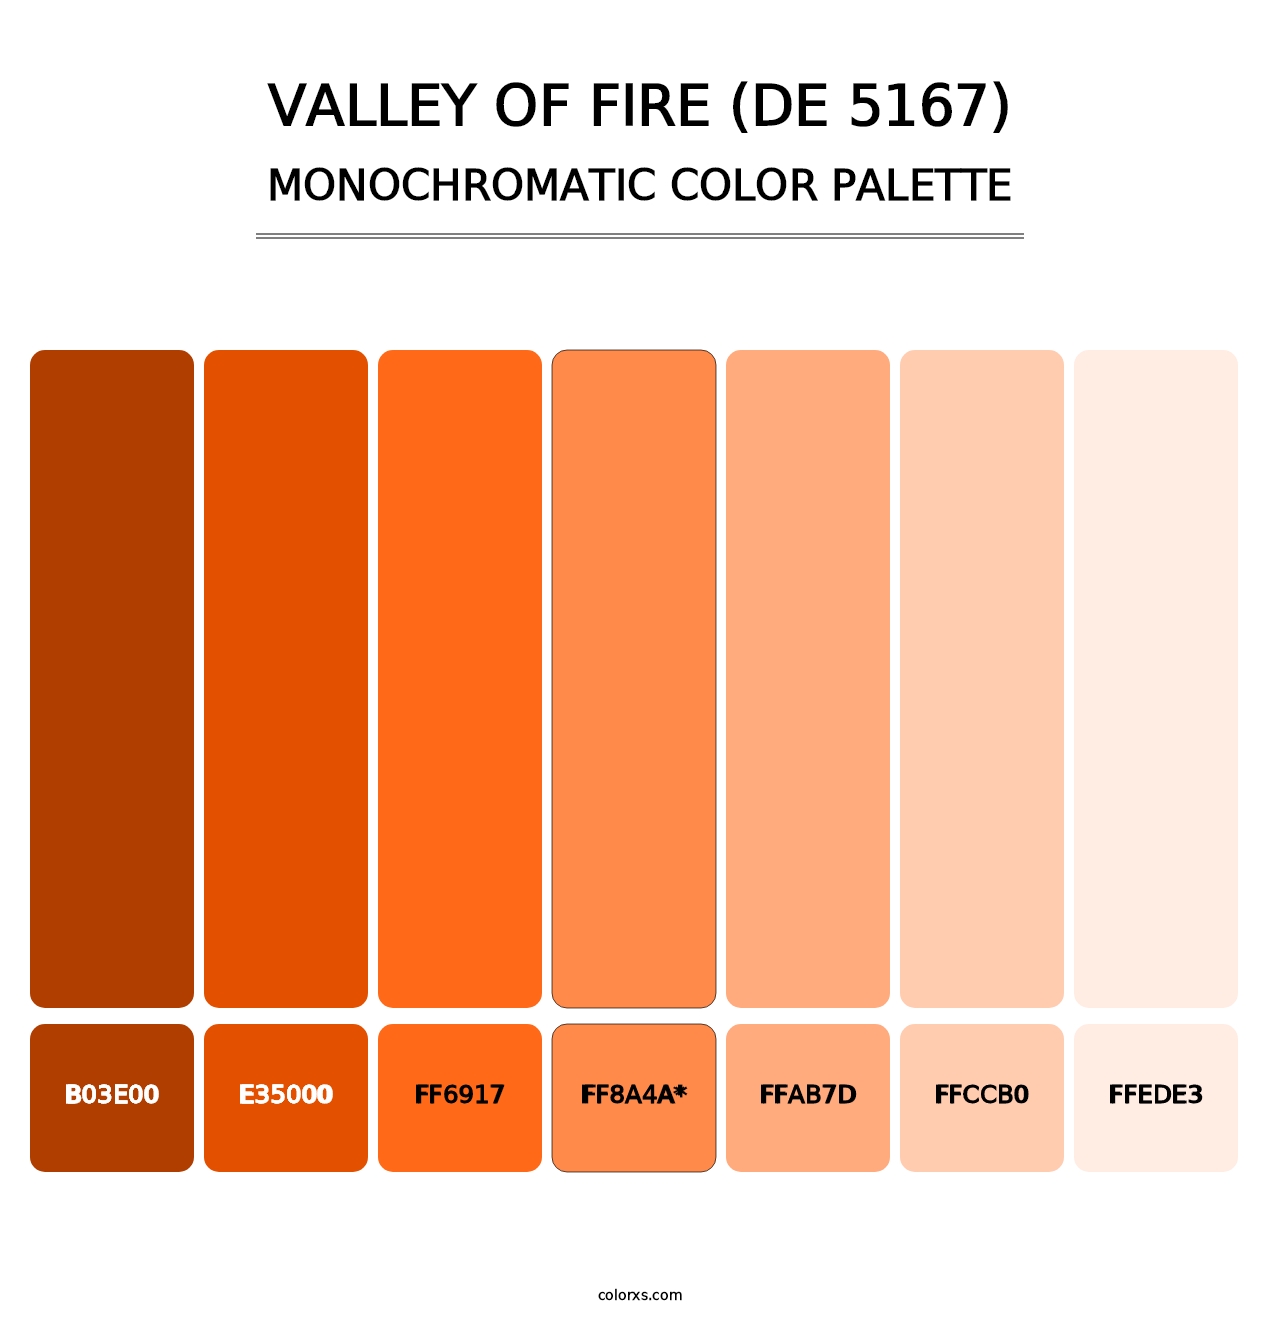 Valley of Fire (DE 5167) - Monochromatic Color Palette